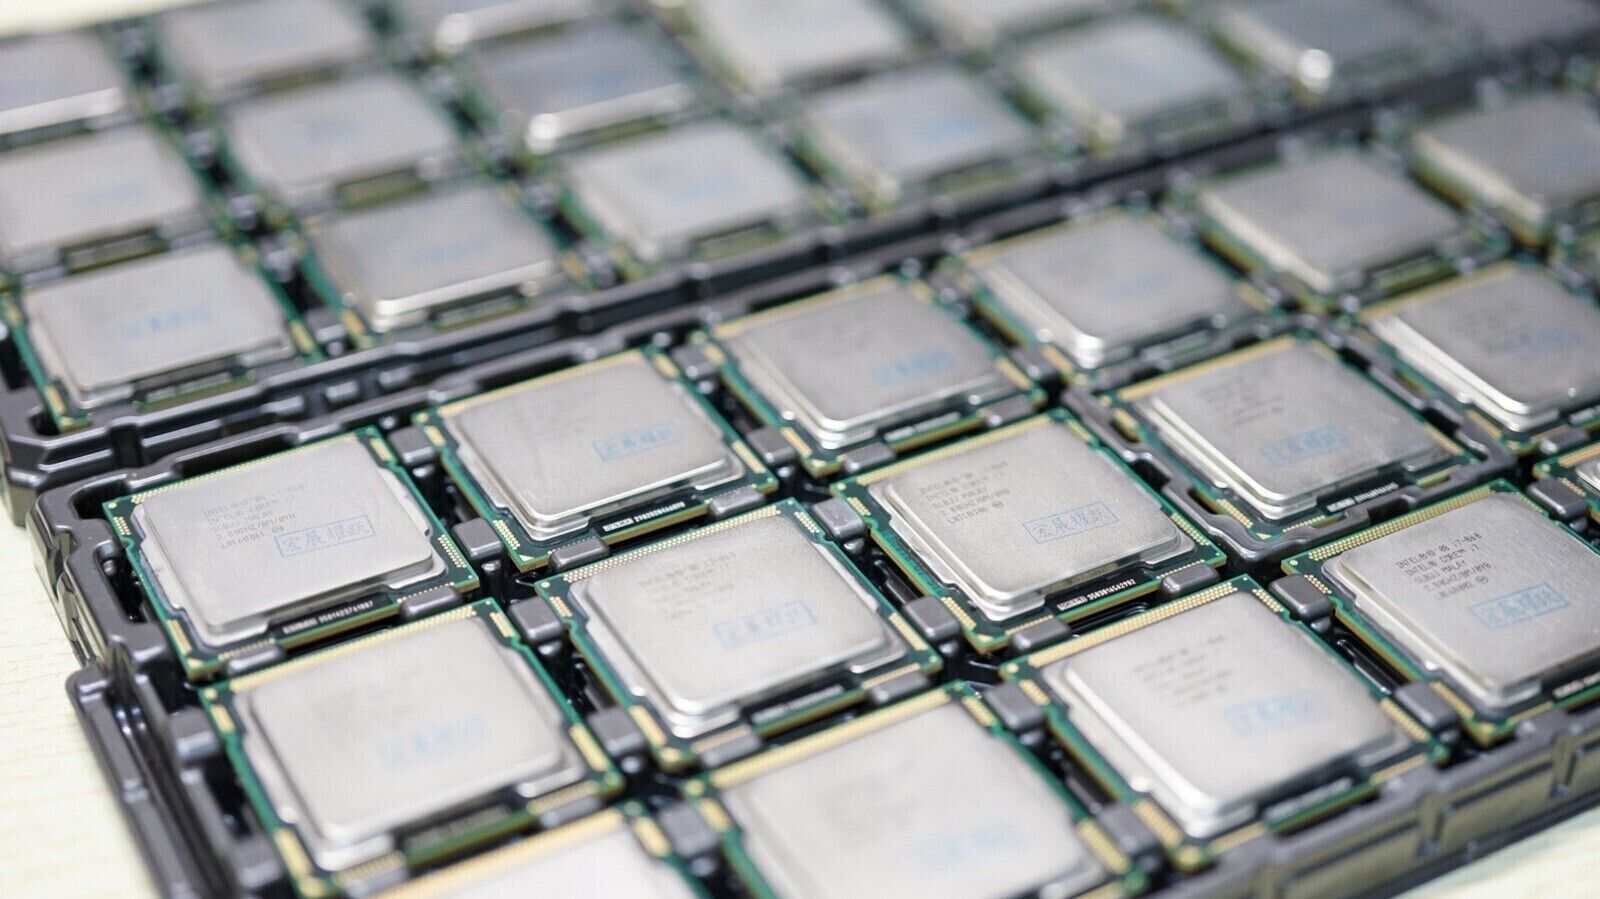 Intel Core i5-750 SLBLC 2.66 GHz Quad-Core LGA 1156 Socket H CPU Processor